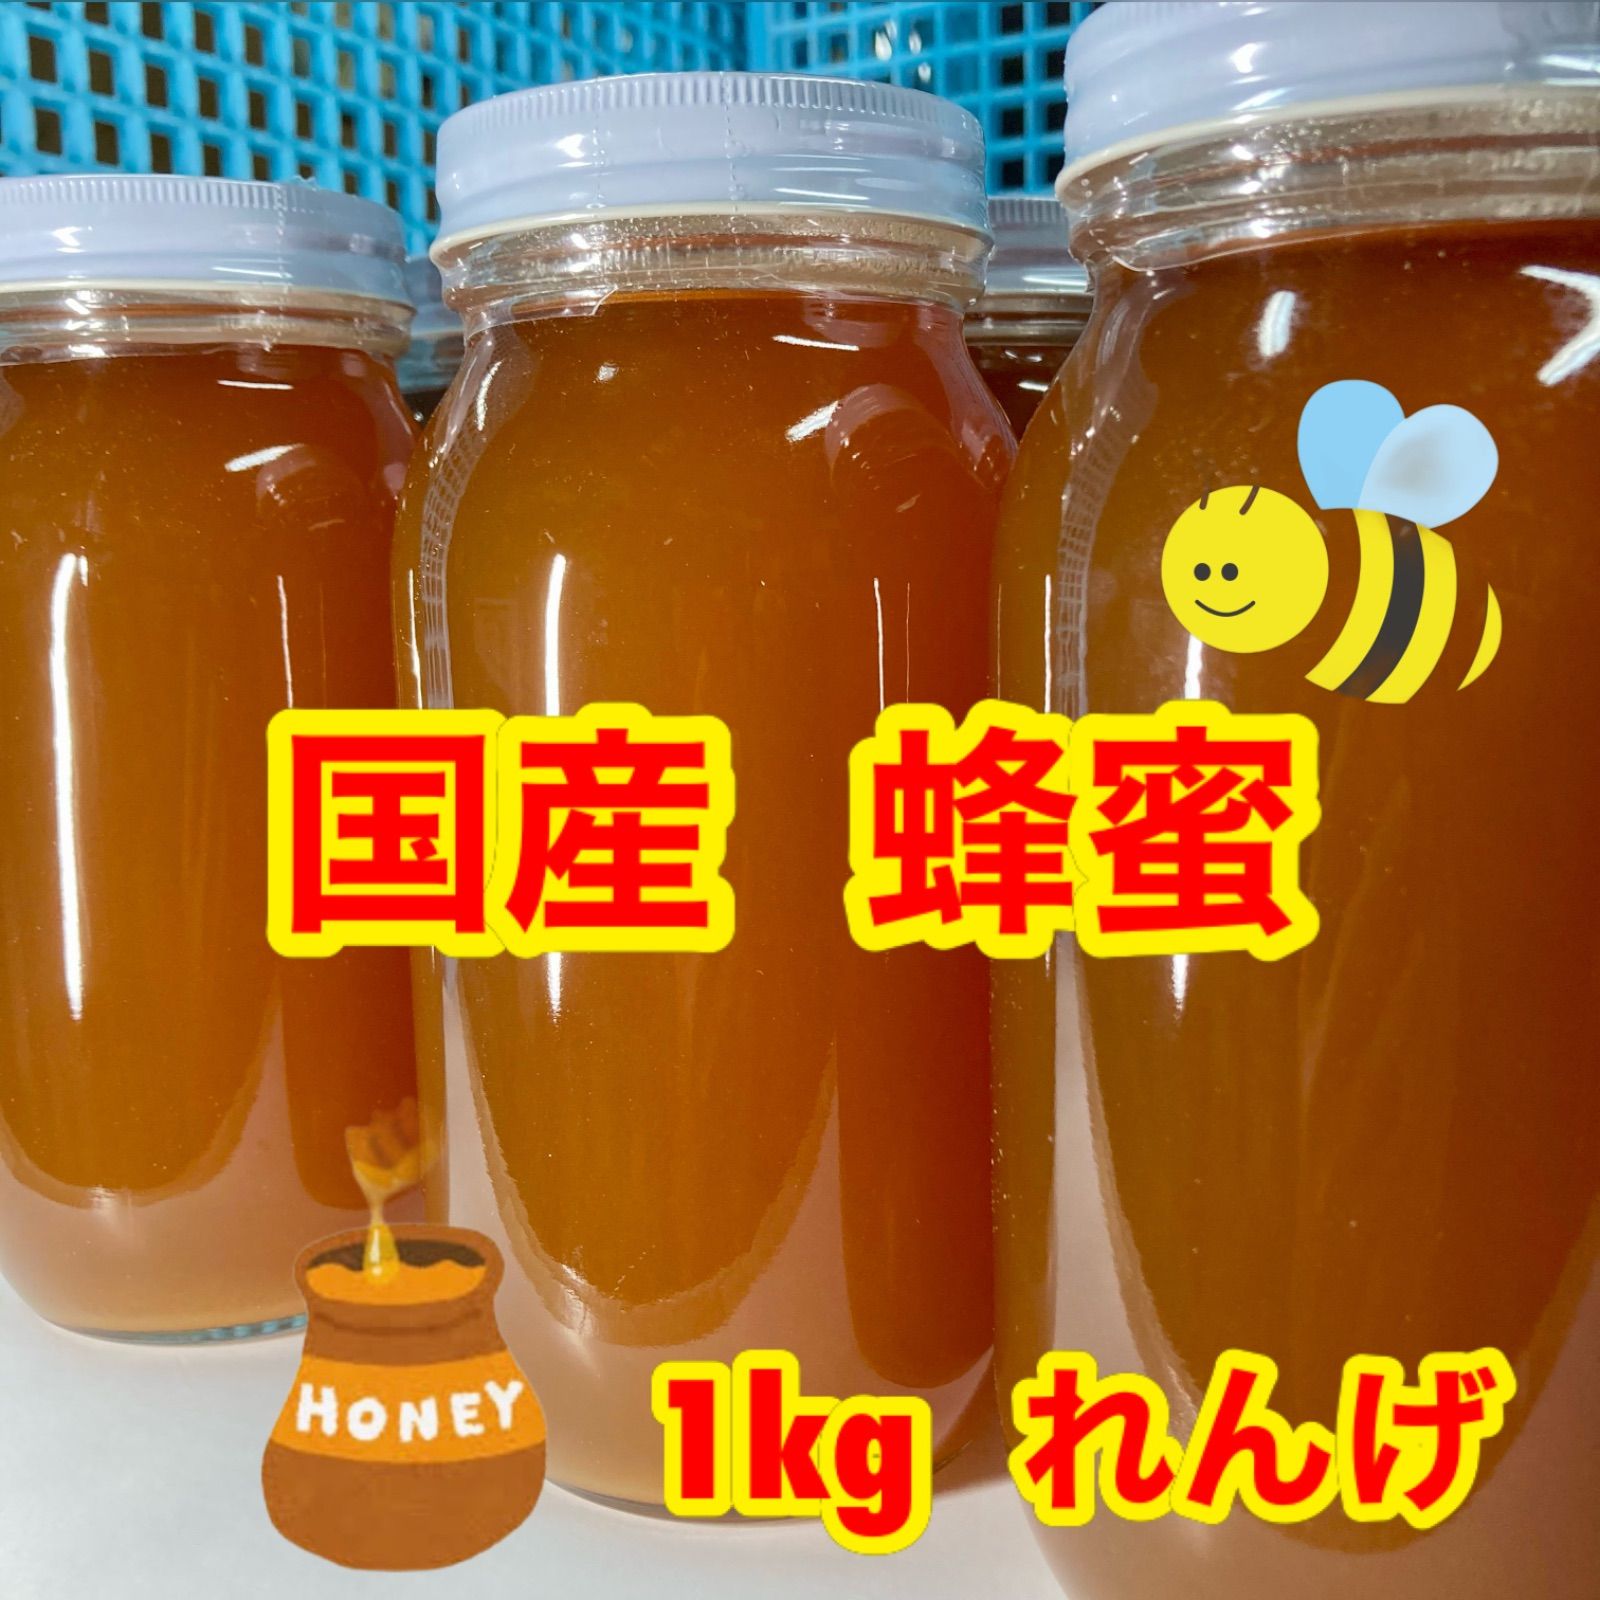 蜂蜜 国産 1kg れんげ蜂蜜 蜂蜜国産 ハチミツ 生蜂蜜100% 非加熱 九州